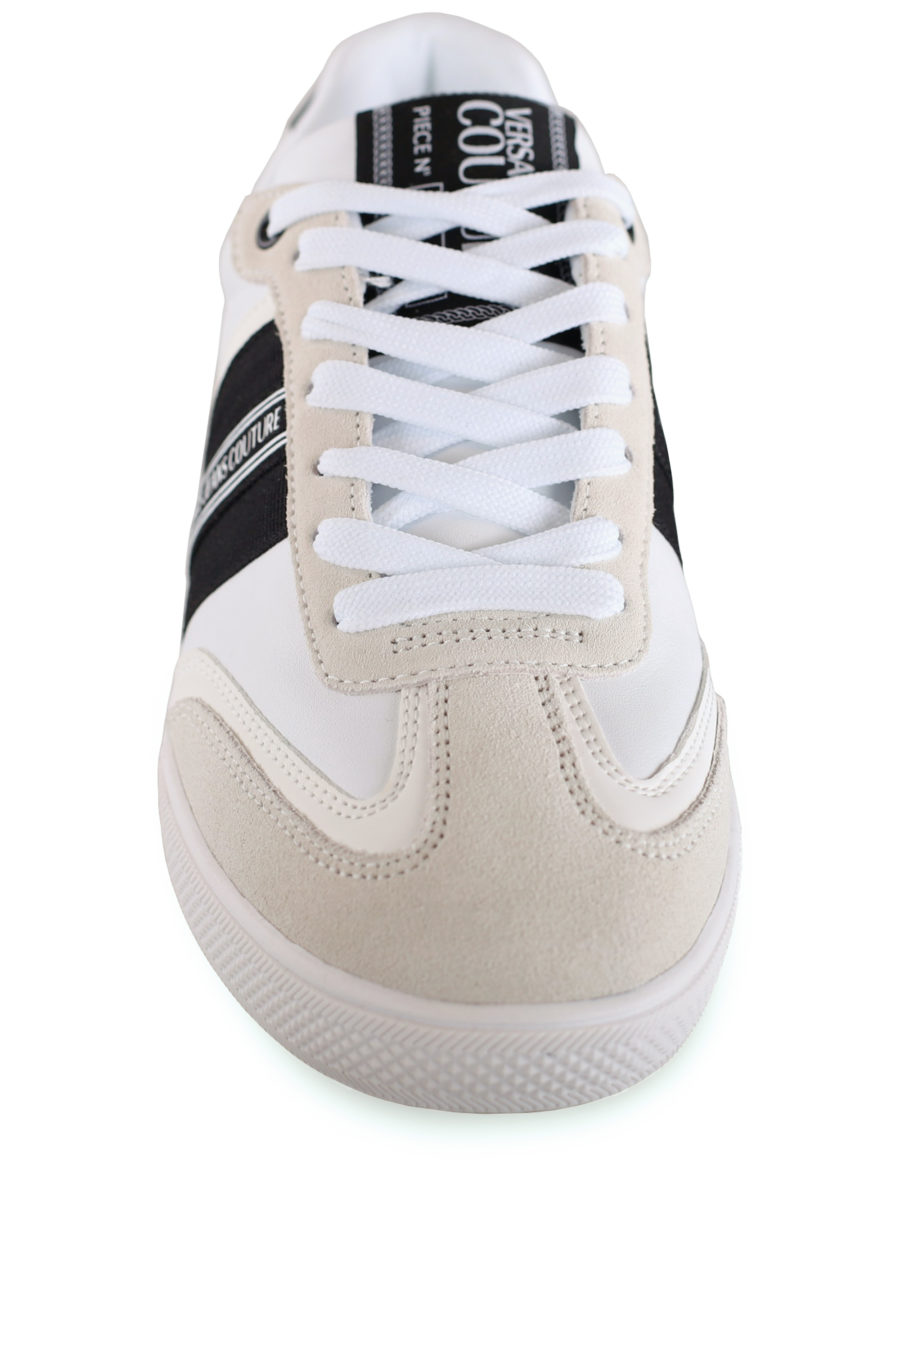 Zapatillas blancas con cordones y logotipo - IMG 8483 copia